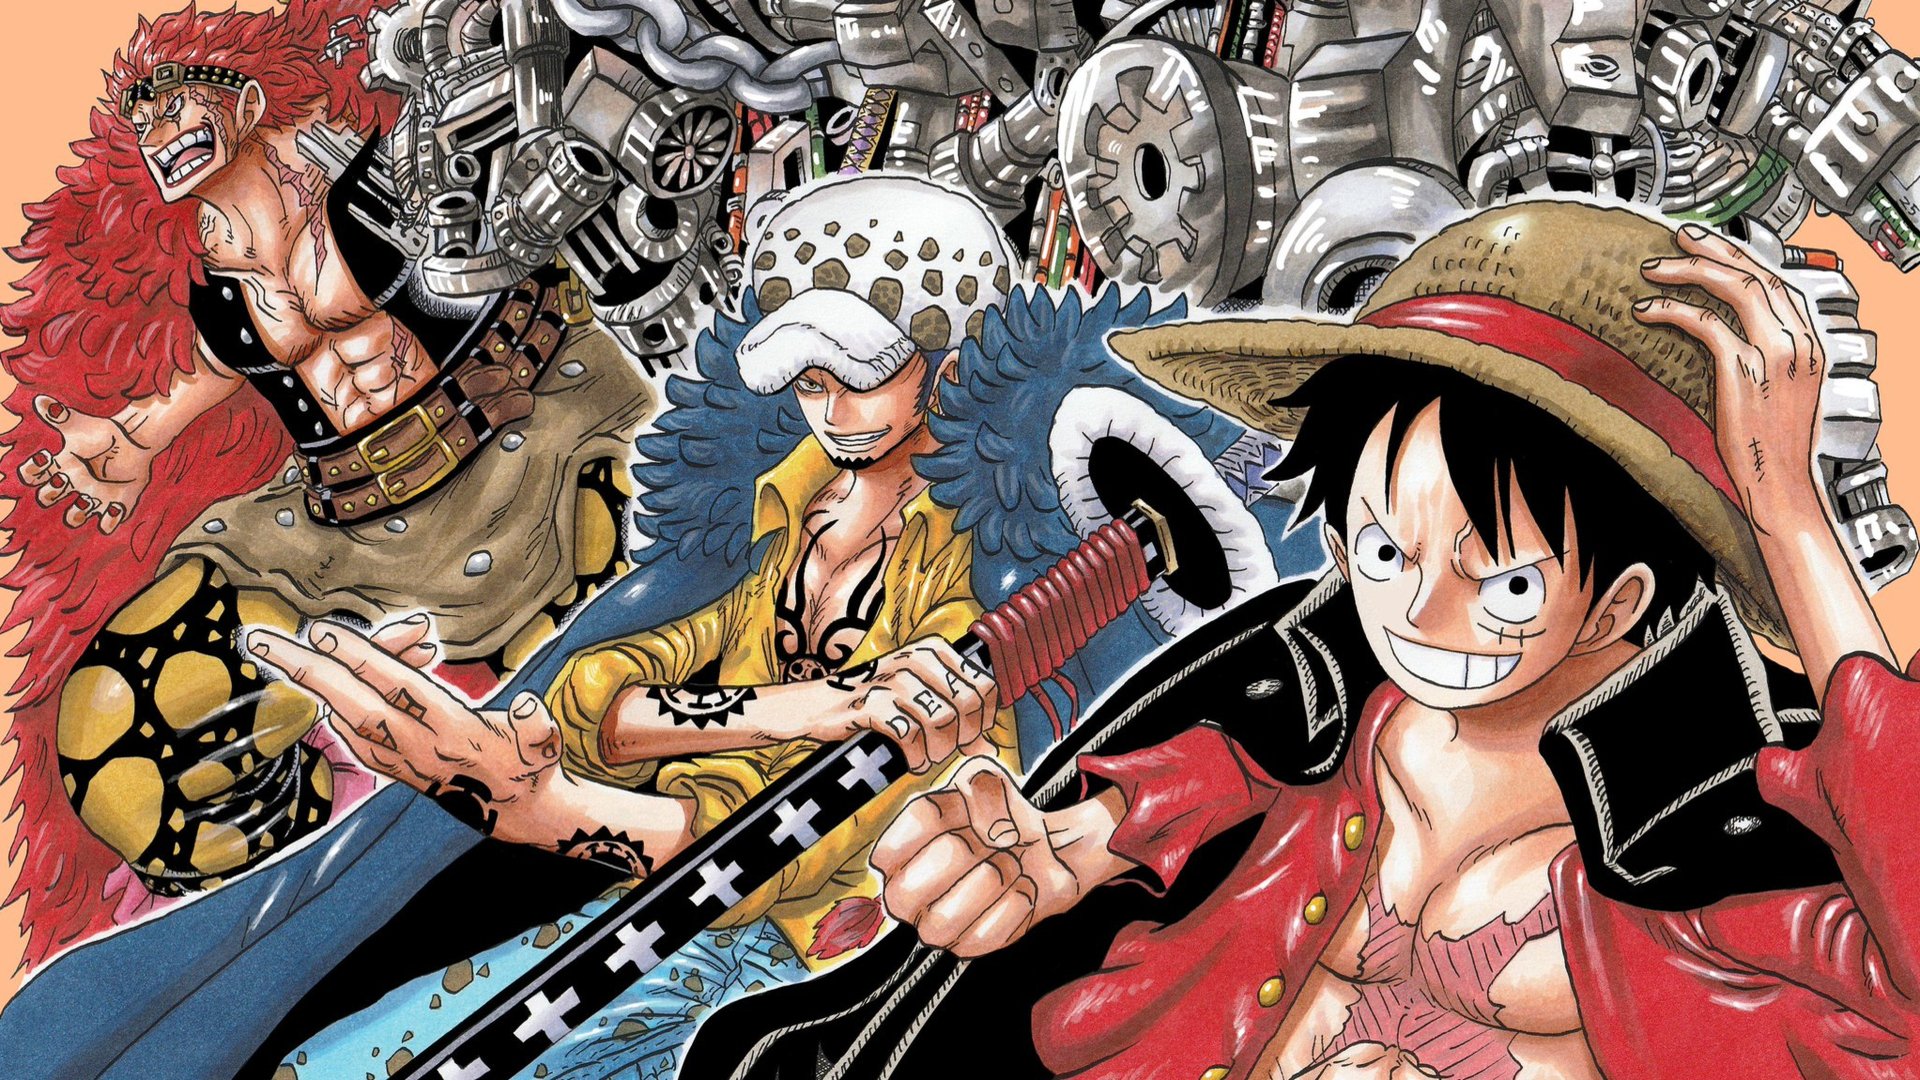 Arc Wano, Law và Kid - một trong những arc đang được fan của One Piece rất mong chờ. Trận chiến giữa tội phạm nguy hiểm Kaido và nhóm Tứ Hoàng đang đến gần, Law và Kid cùng đứng lên chống lại hắn ta. Hãy cùng thưởng thức hình ảnh tuyệt đẹp trong arc này.